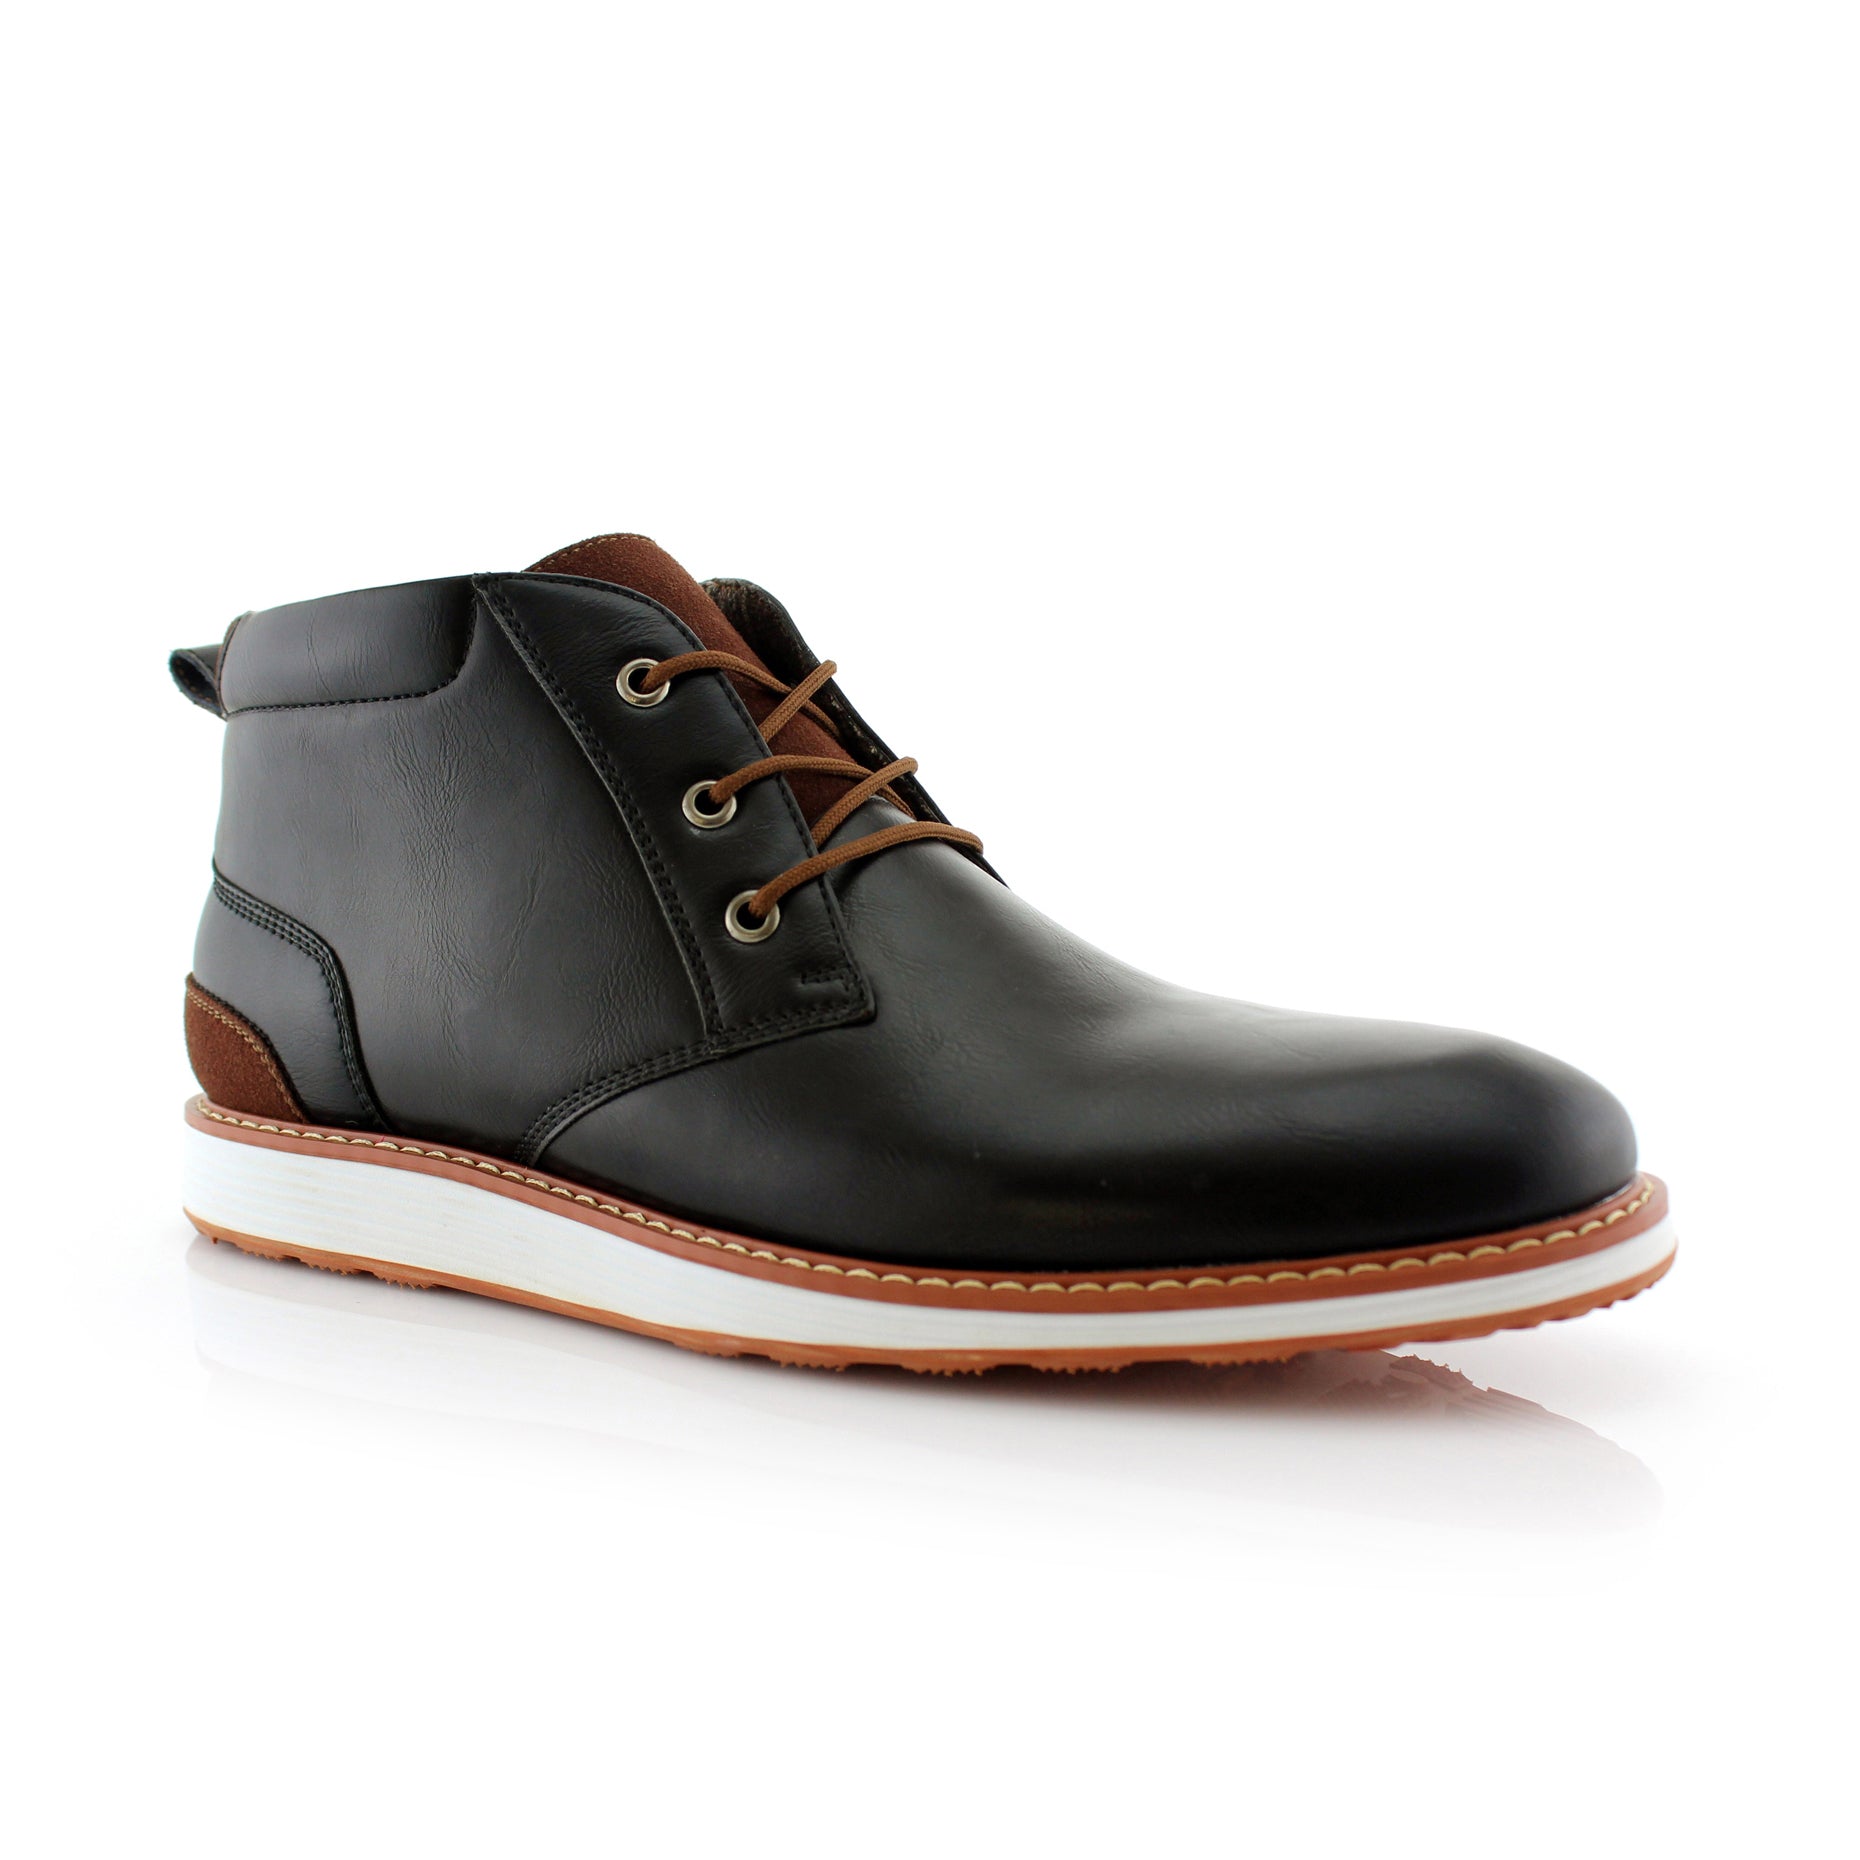 Sneaker Chukka Boots | Houstan by Ferro Aldo | Conal Footwear | Main Angle View